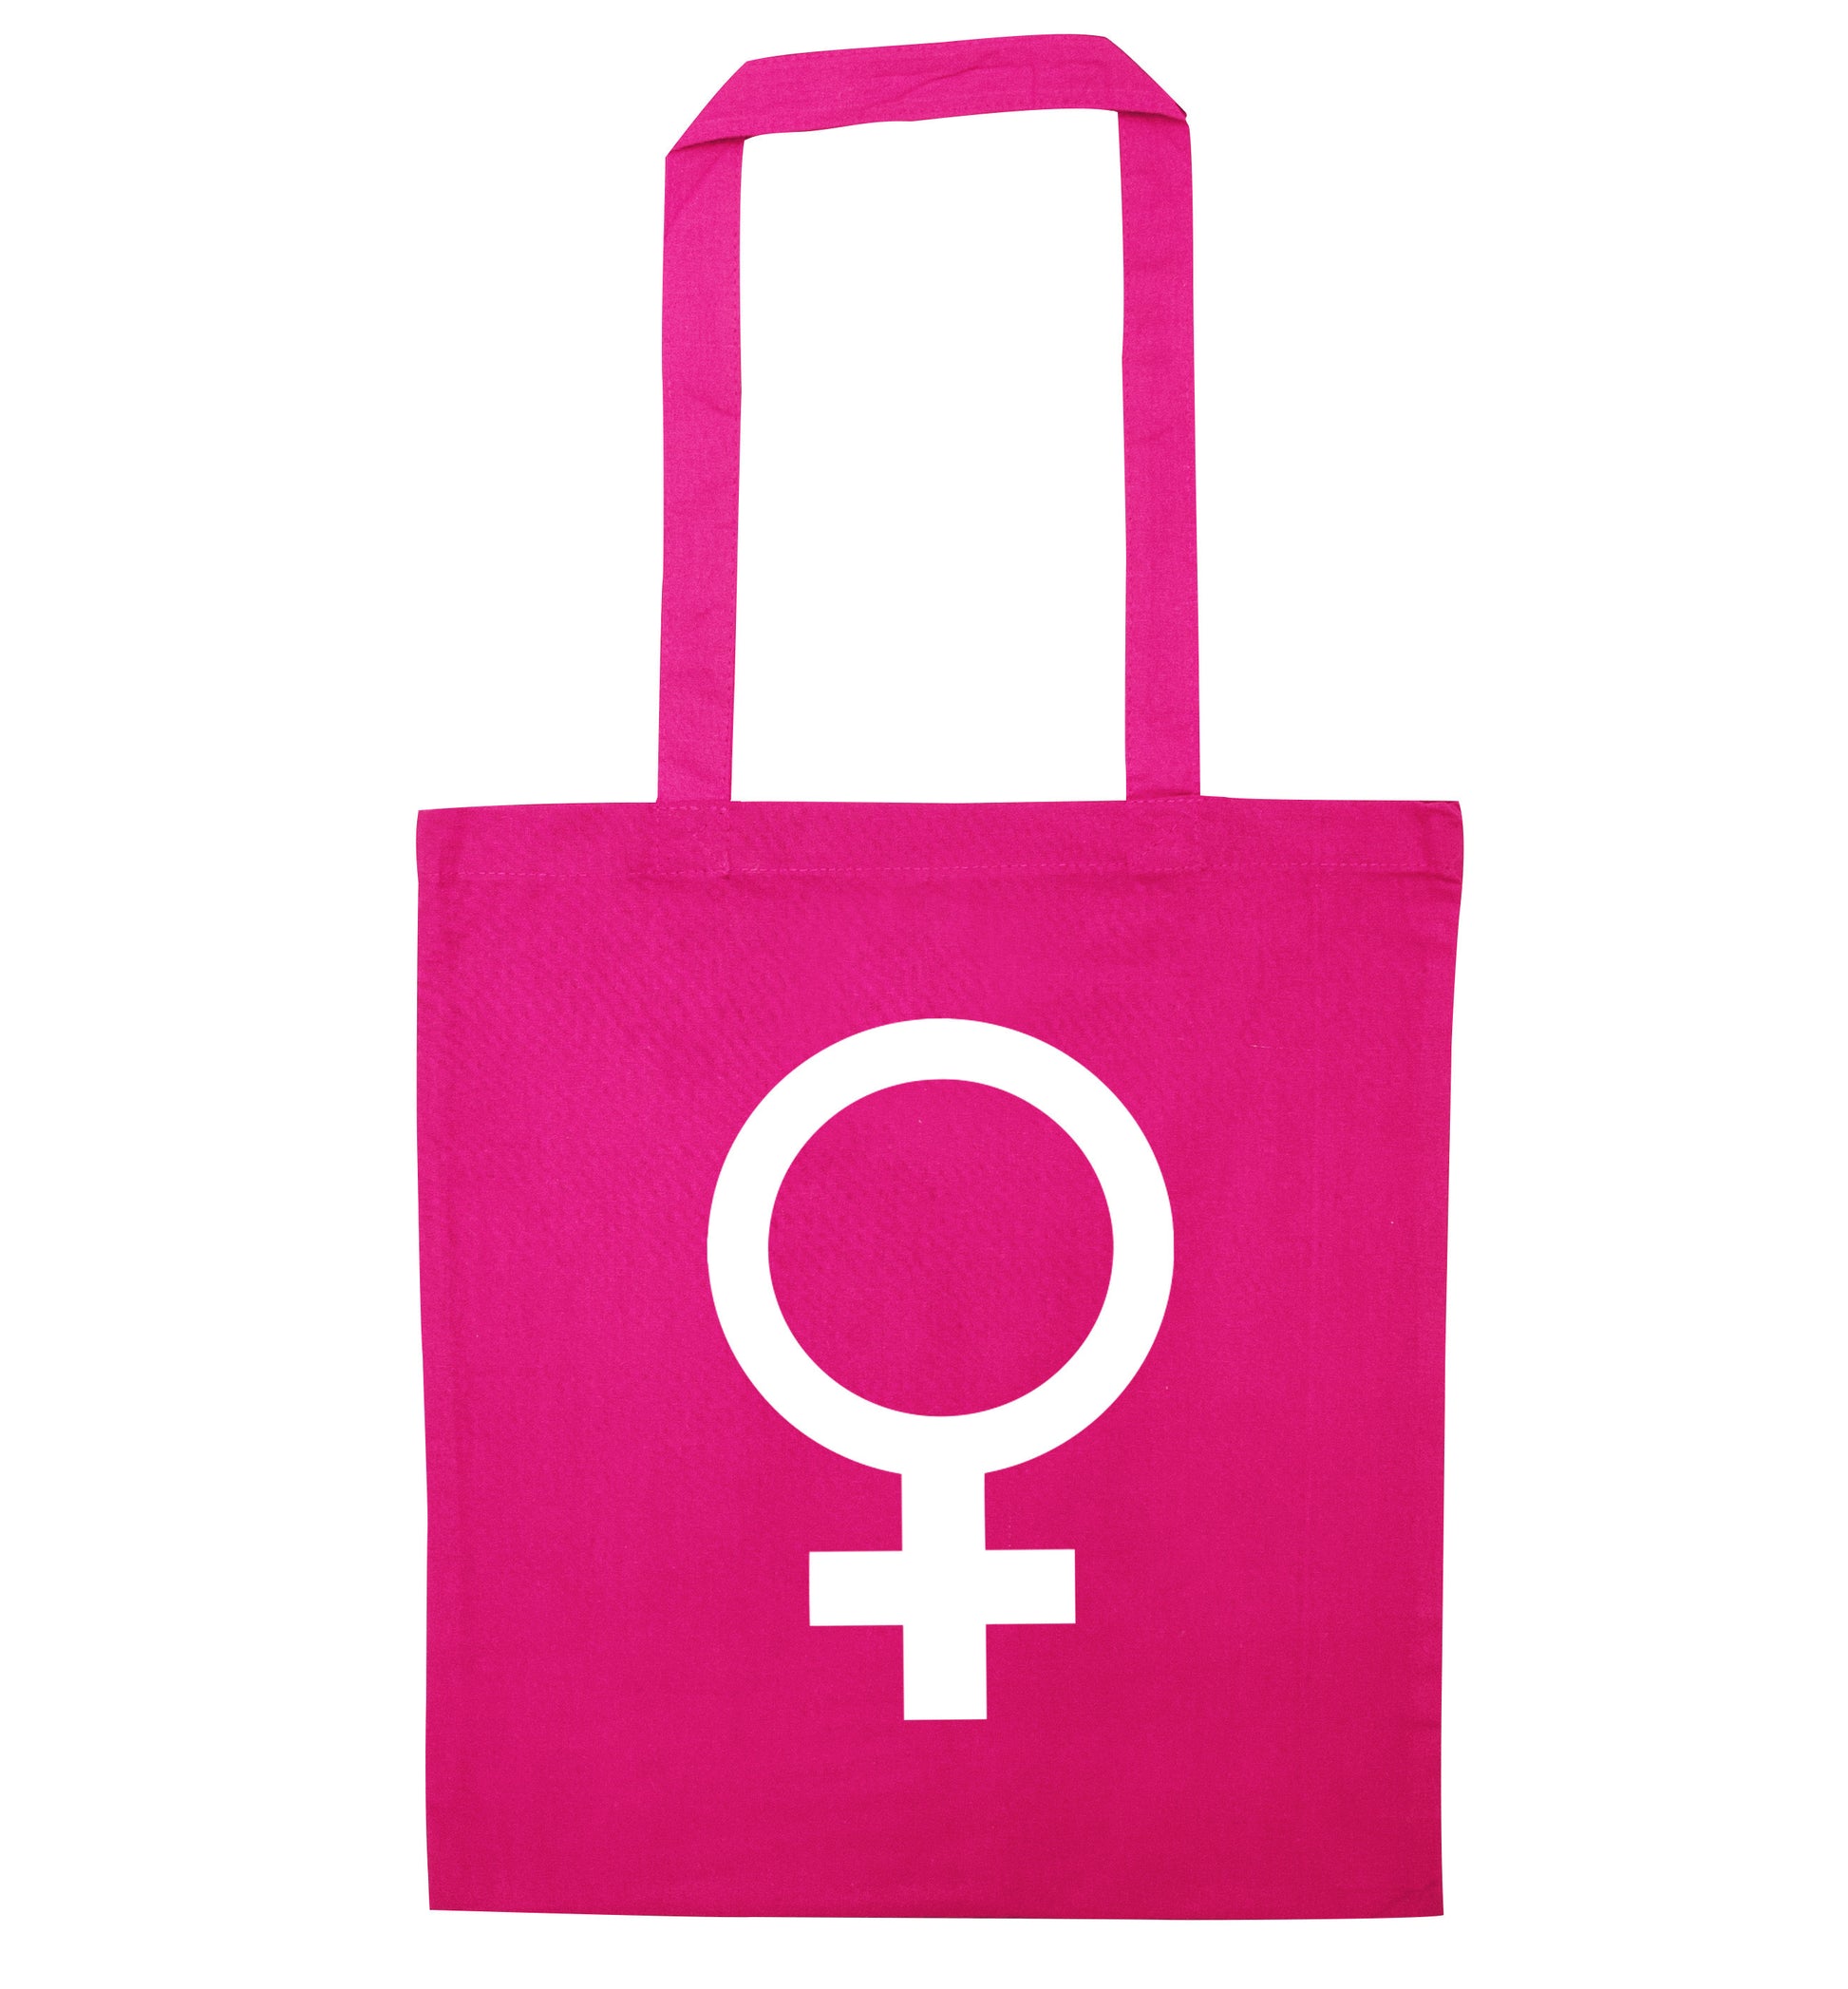 Female symbol large pink tote bag